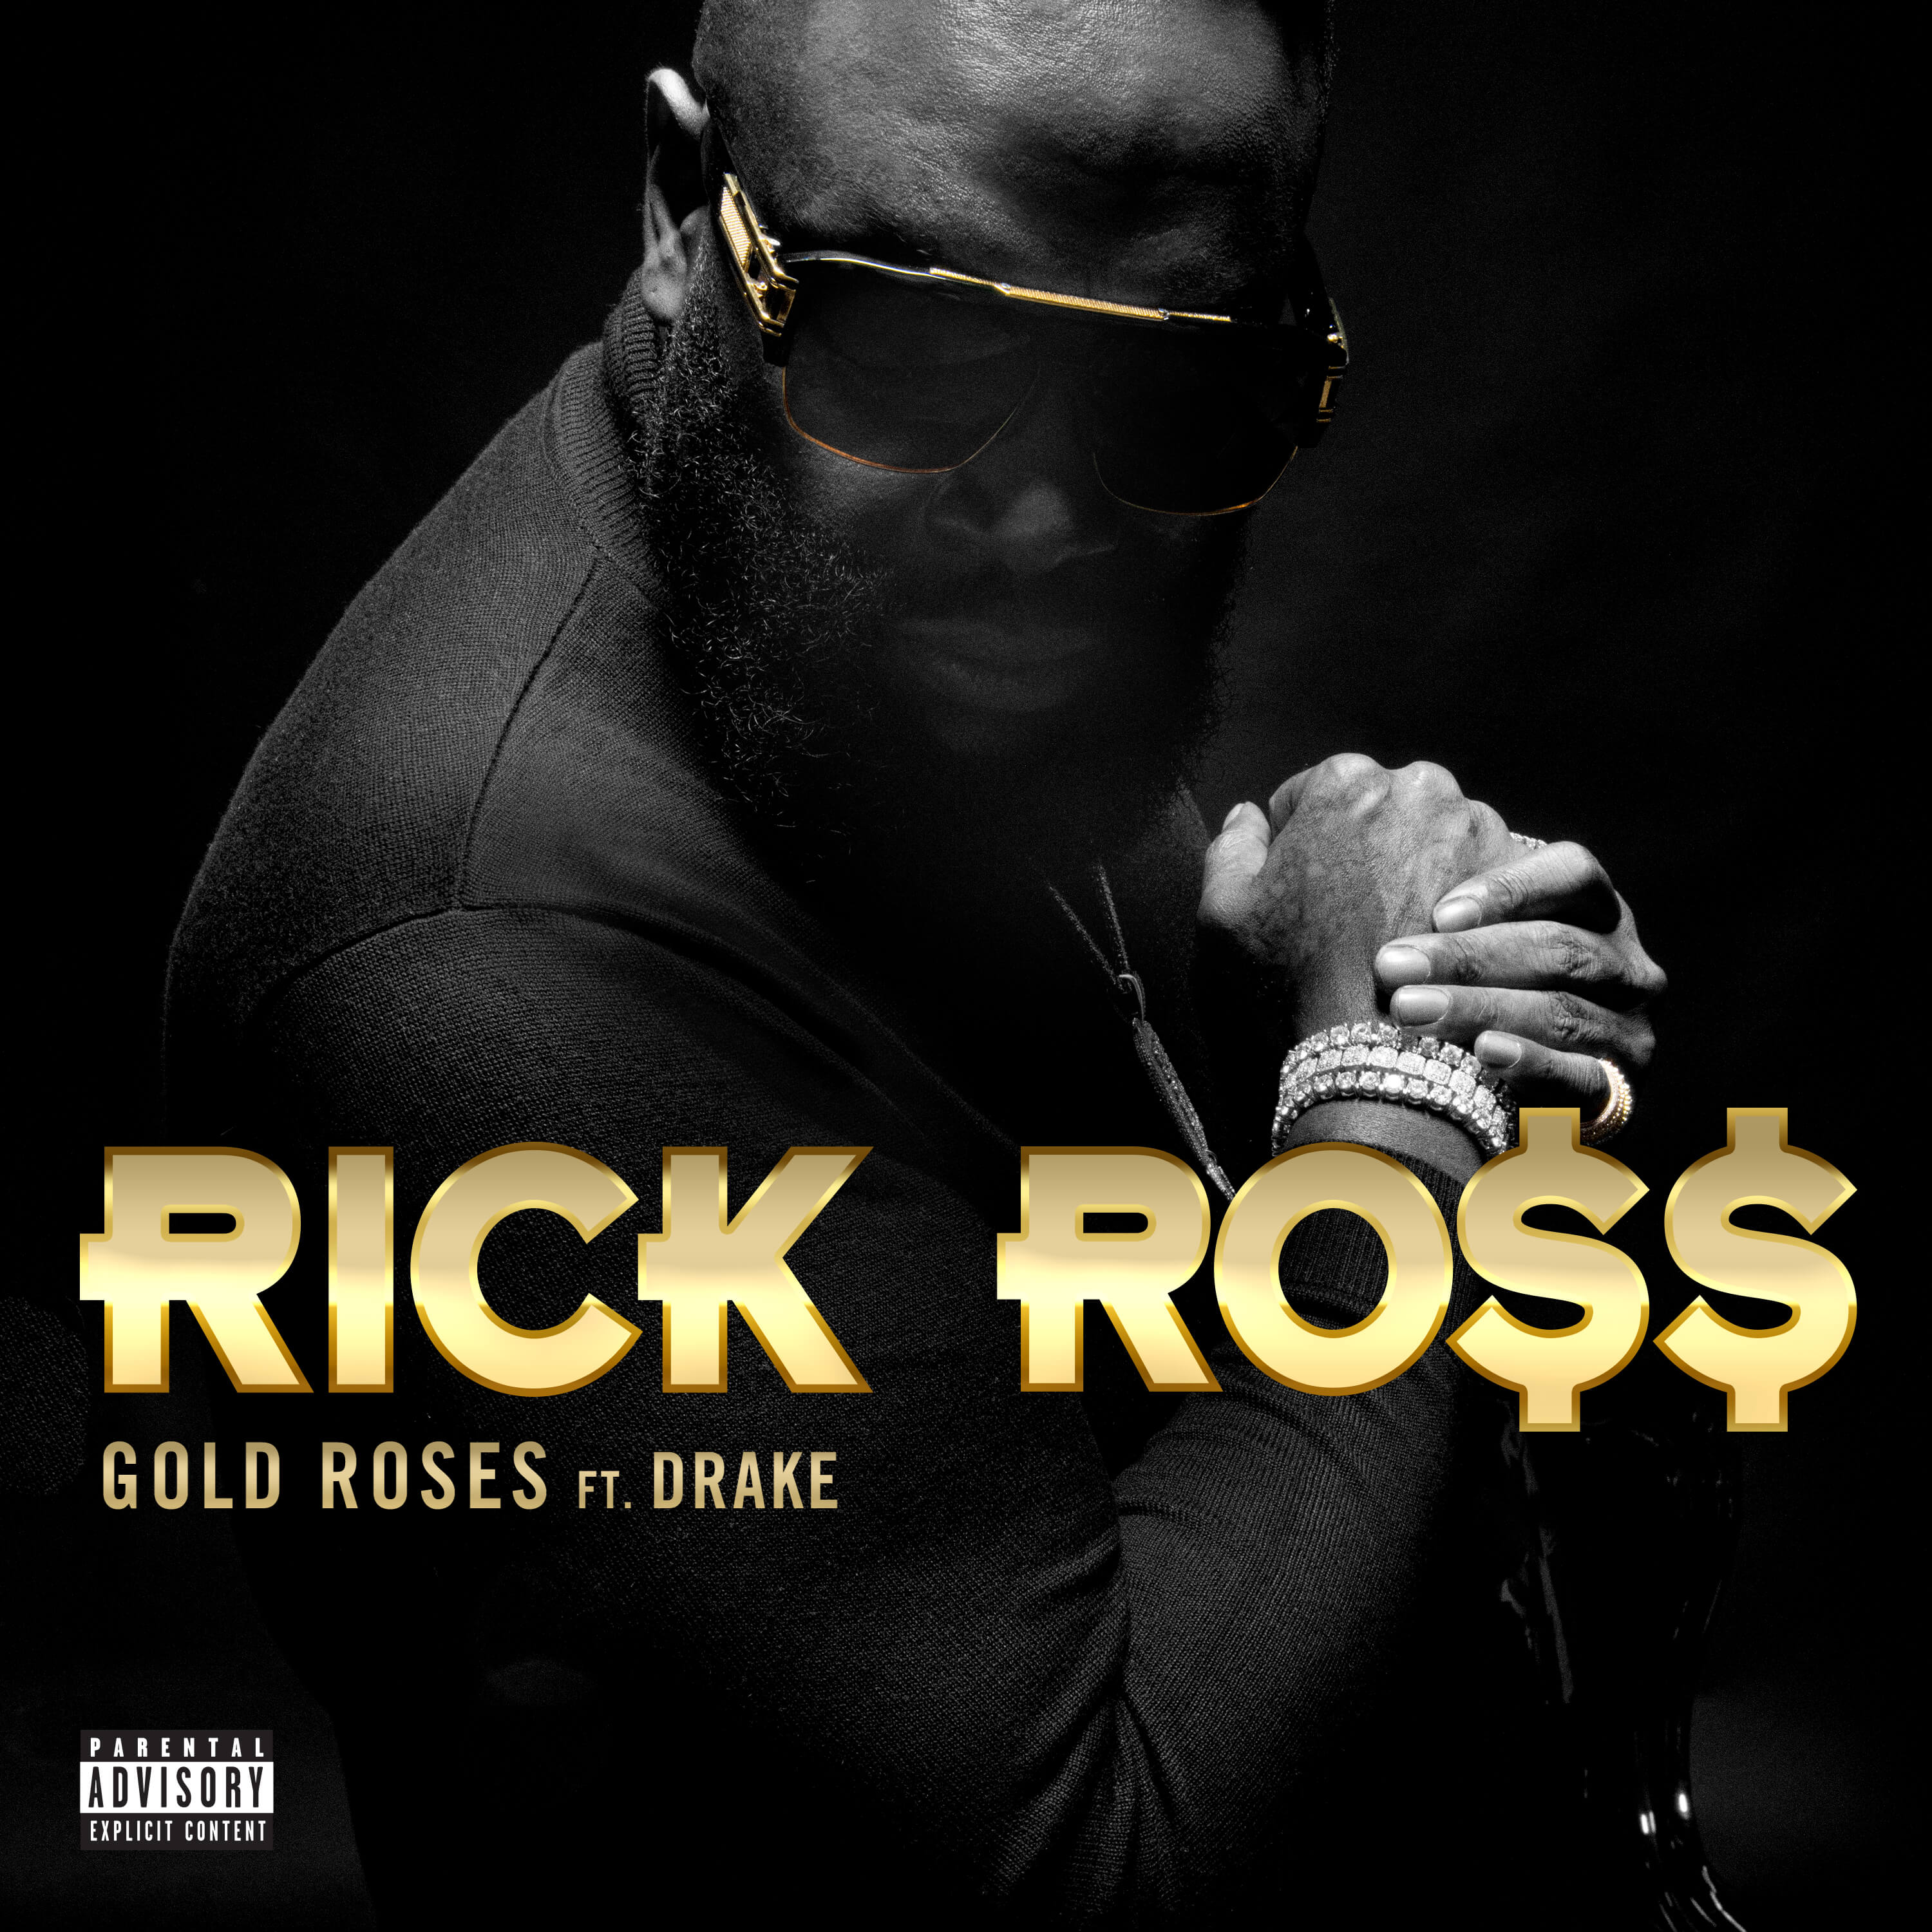 Gold Roses ft. Drake